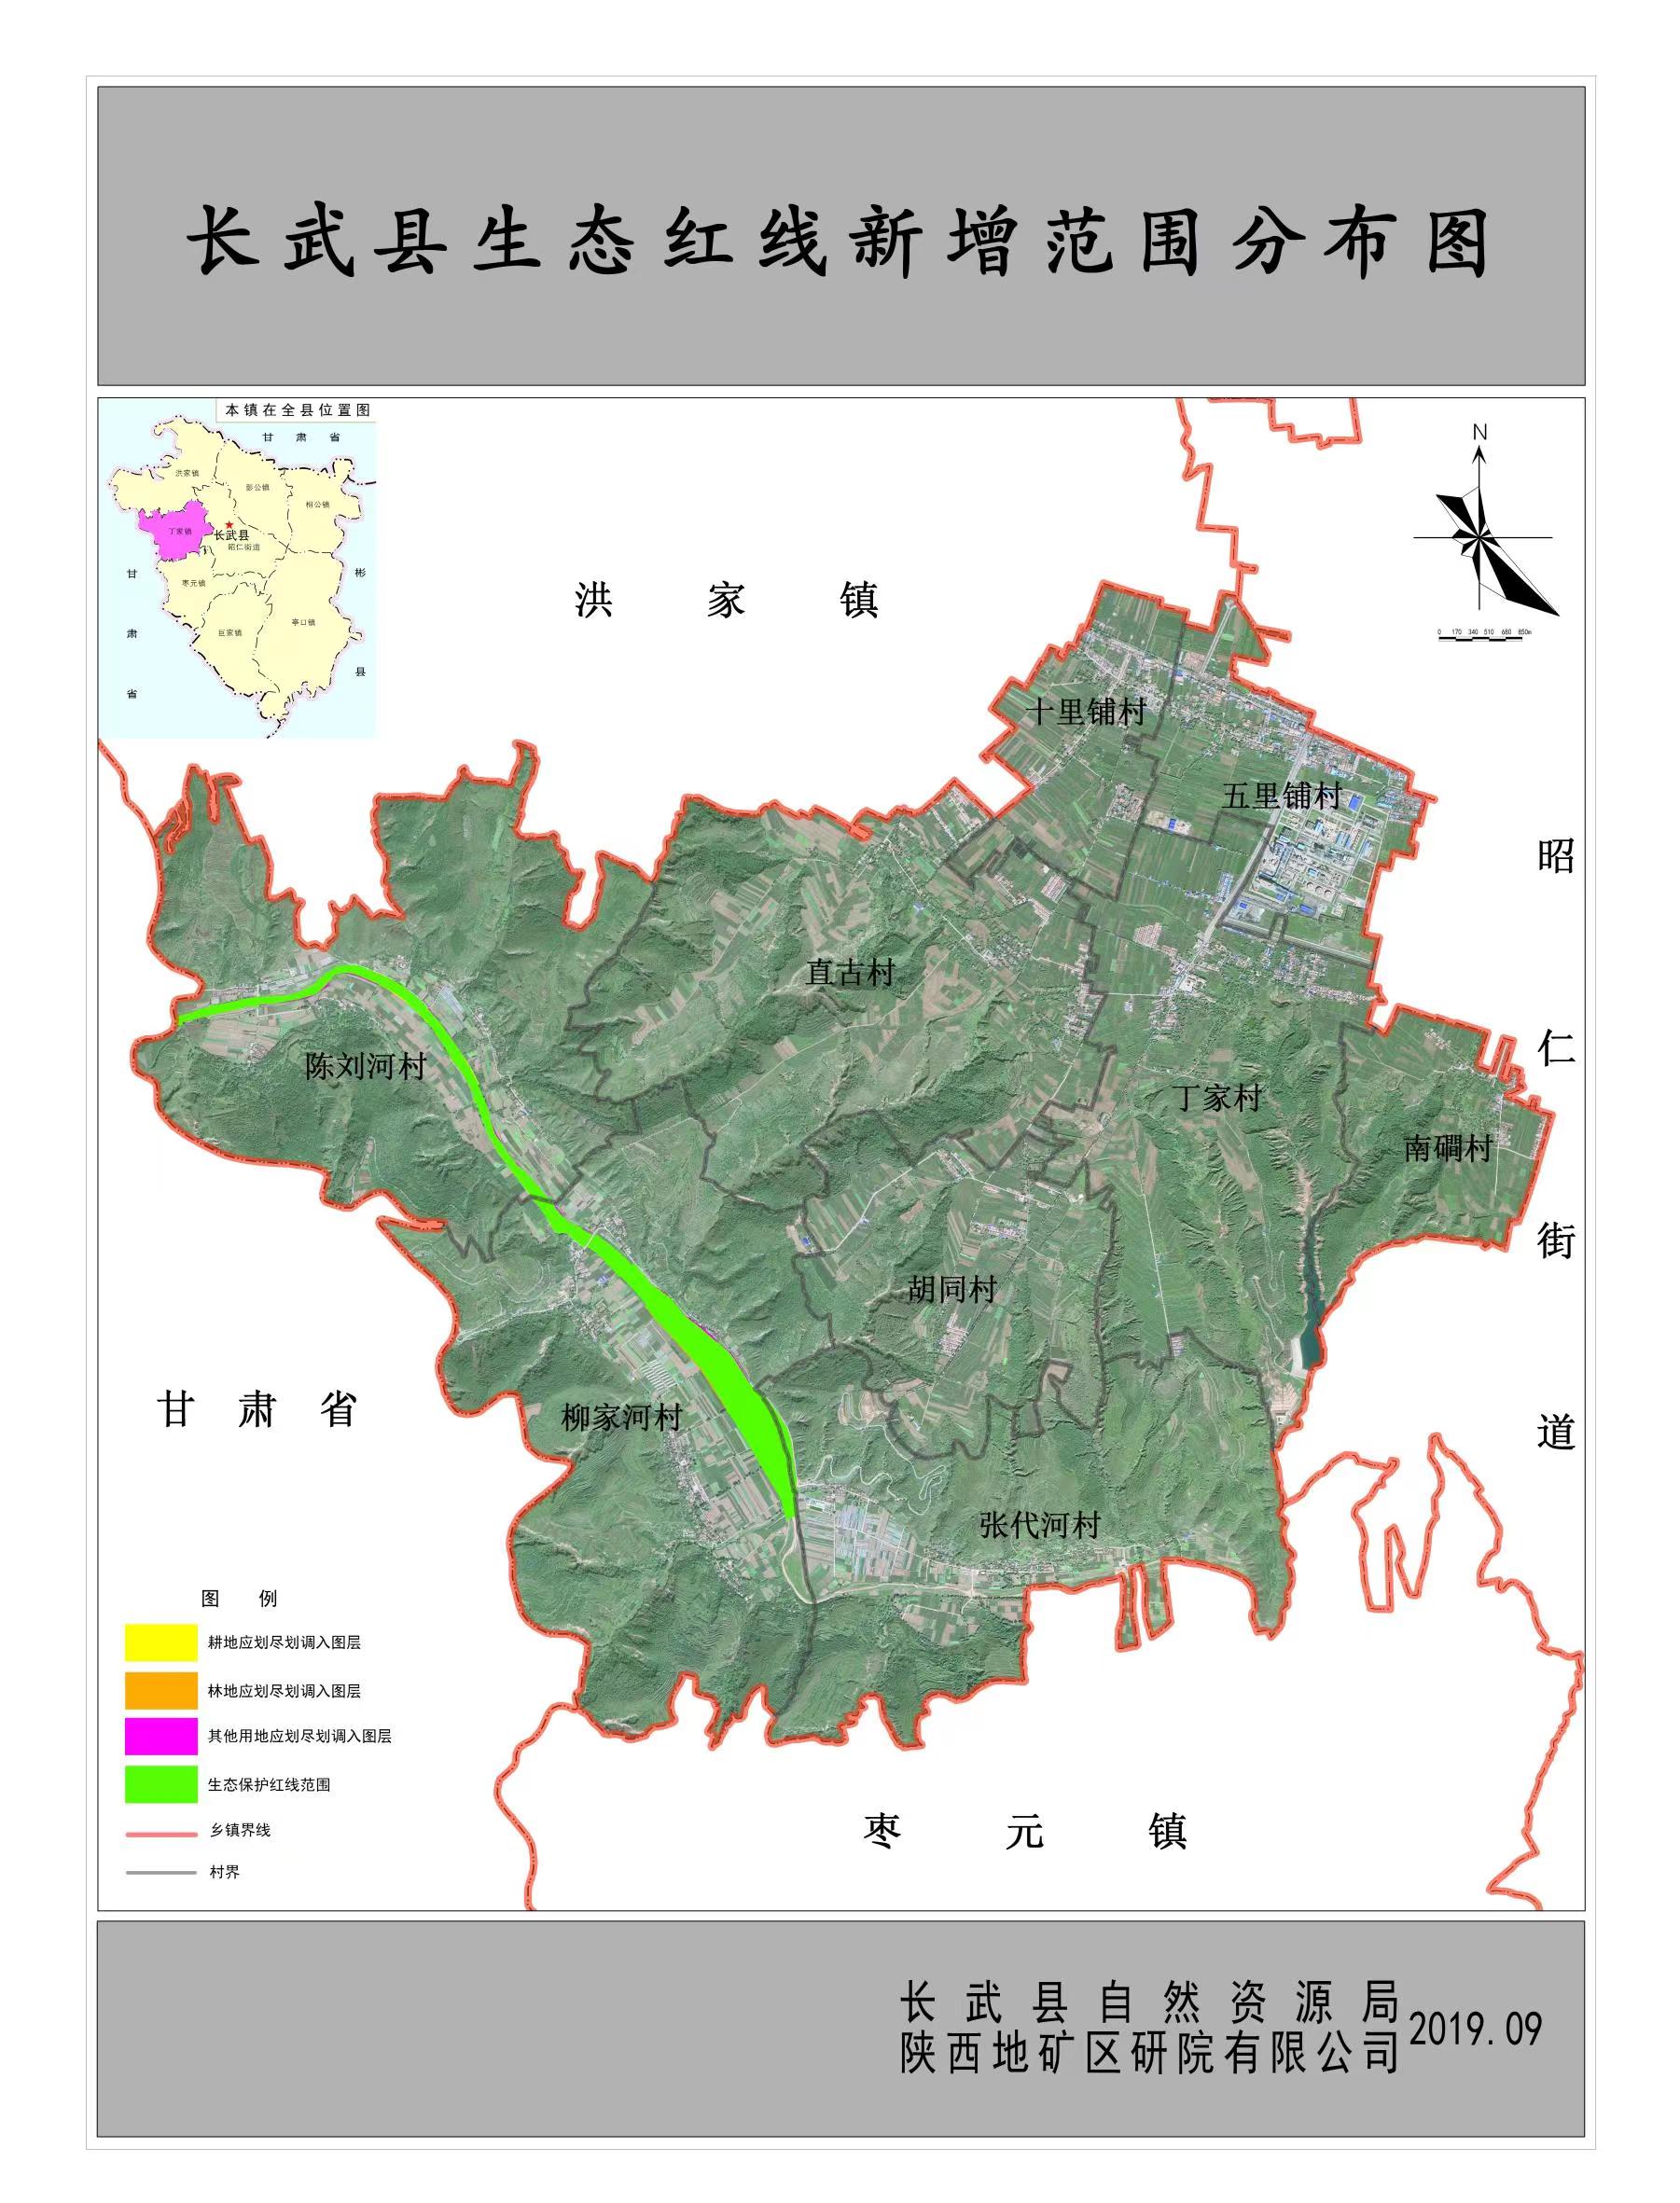 长武县自然资源局积极推进生态保护红线评估调整工作